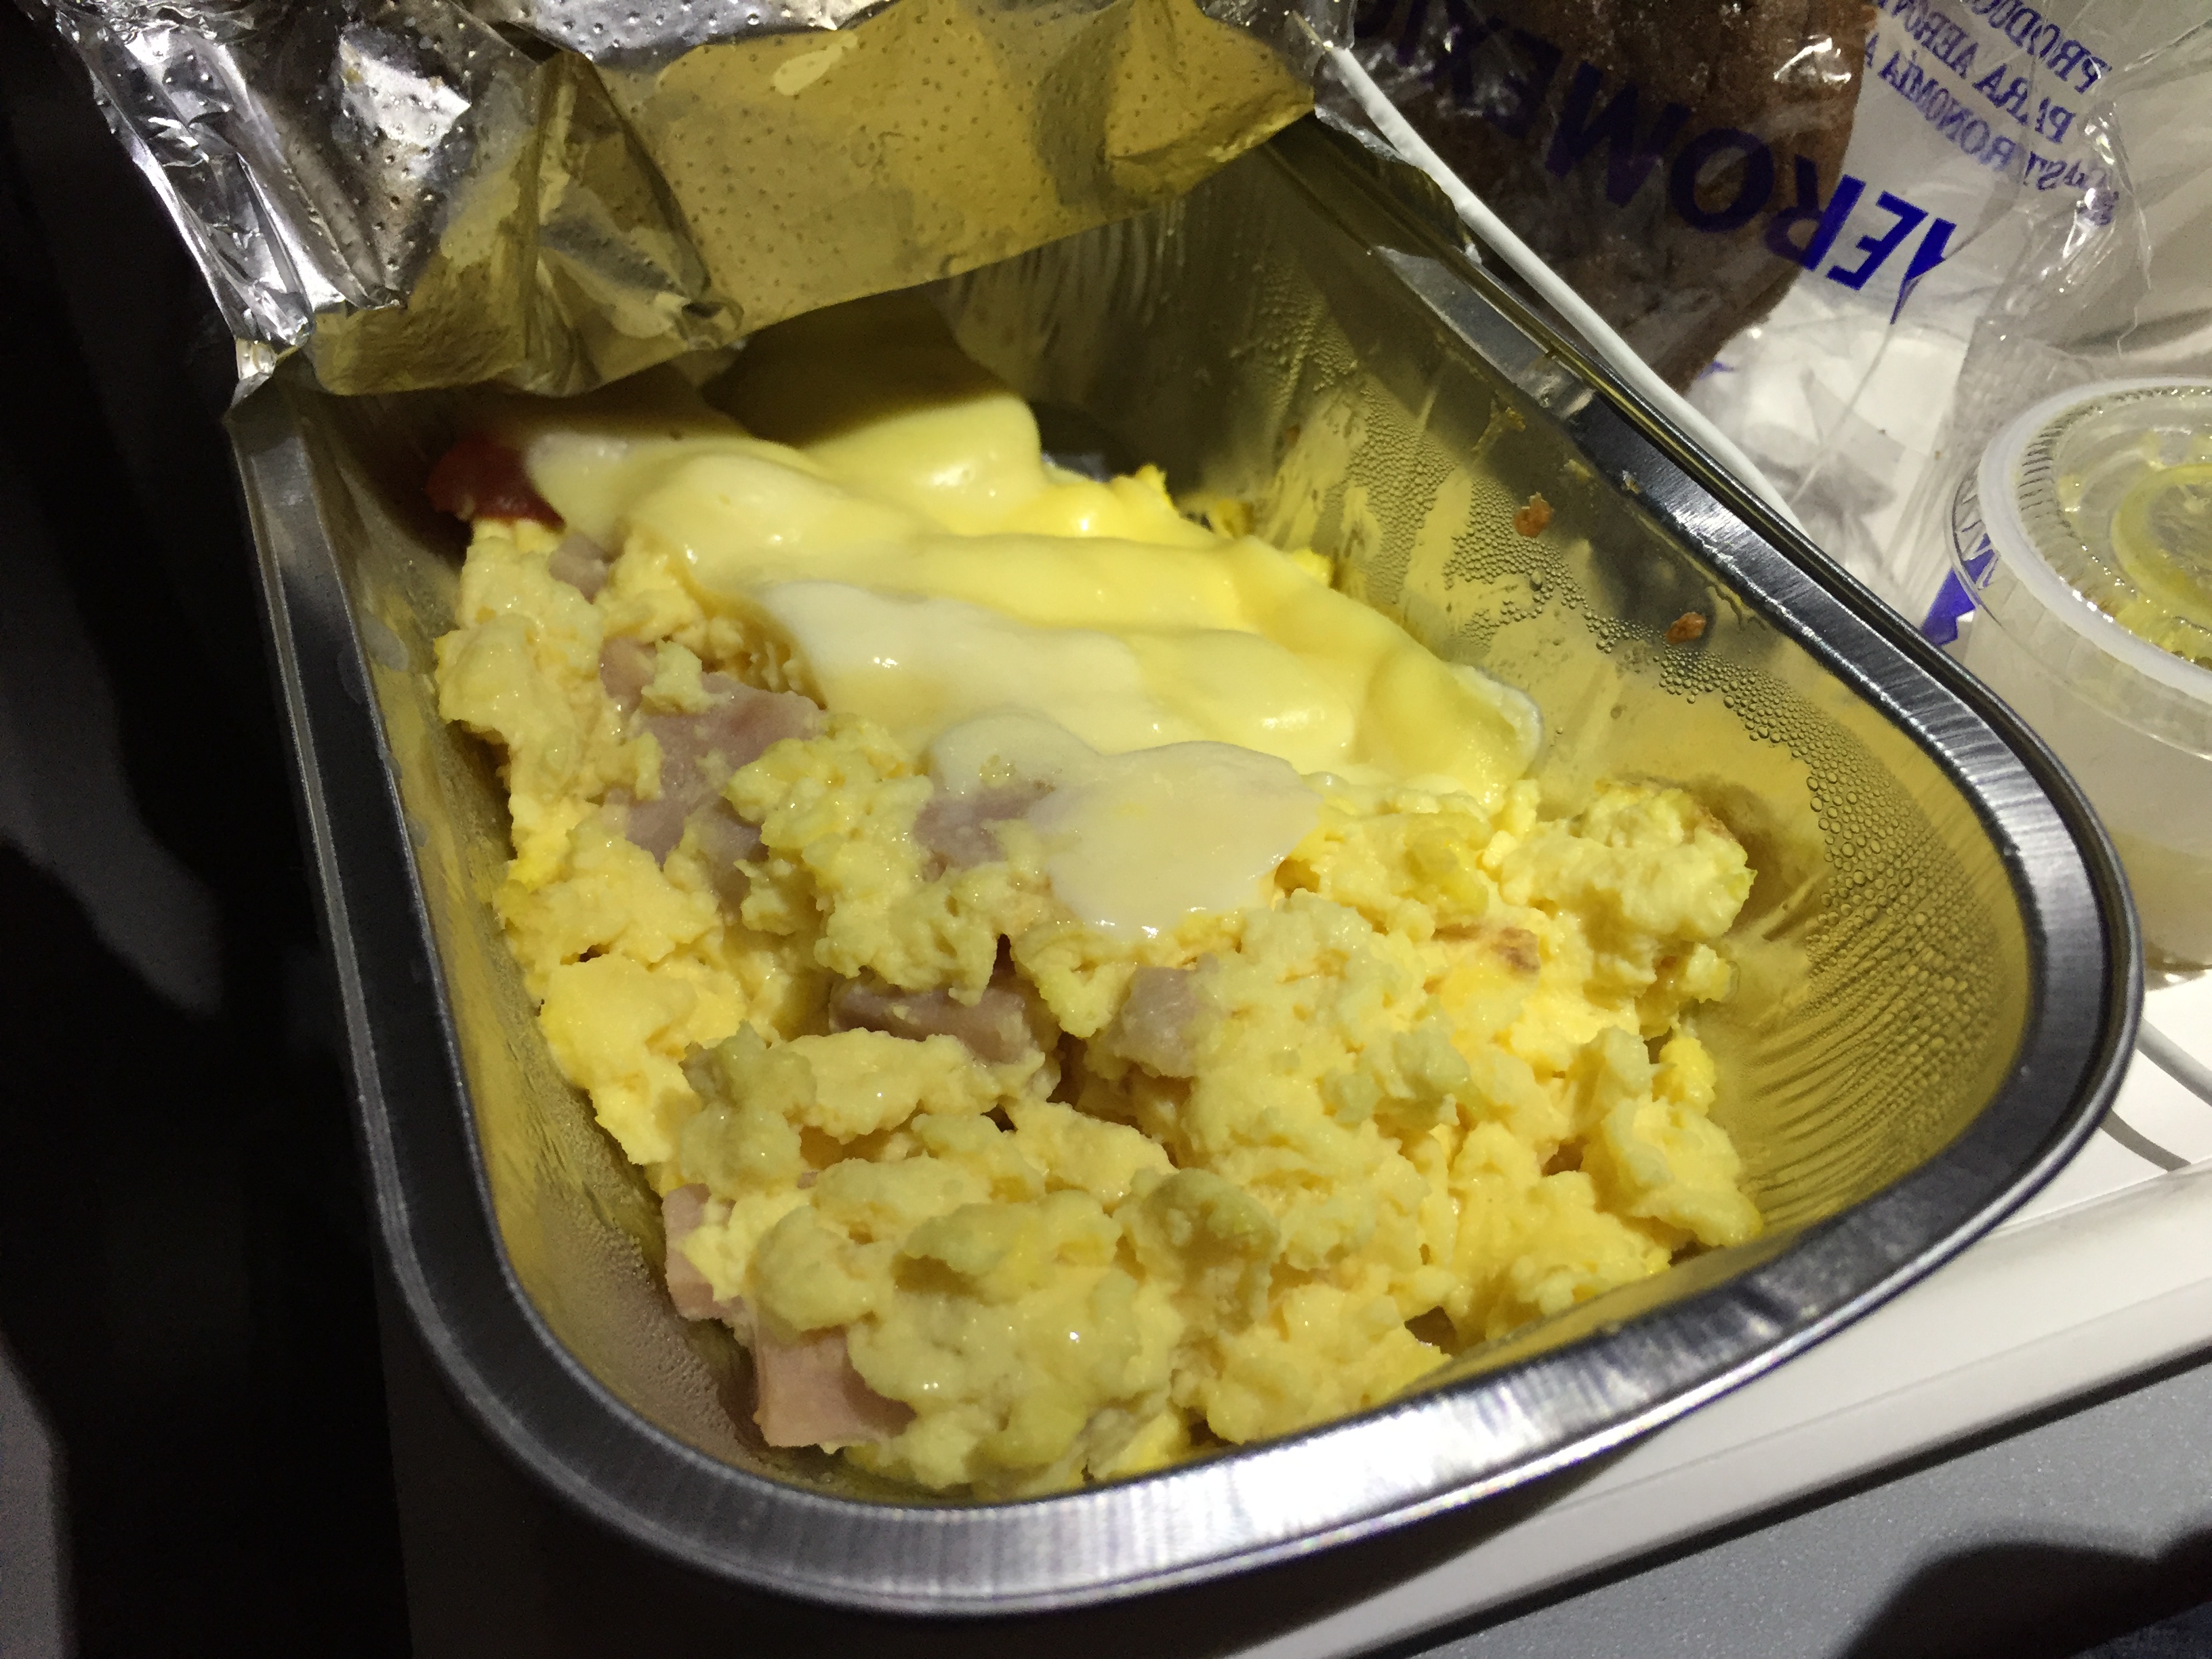 Las aerolineas tradicionalmente ofrecen huevo revuelto a secas. El queso y el jamón fueron bien recibidos. 